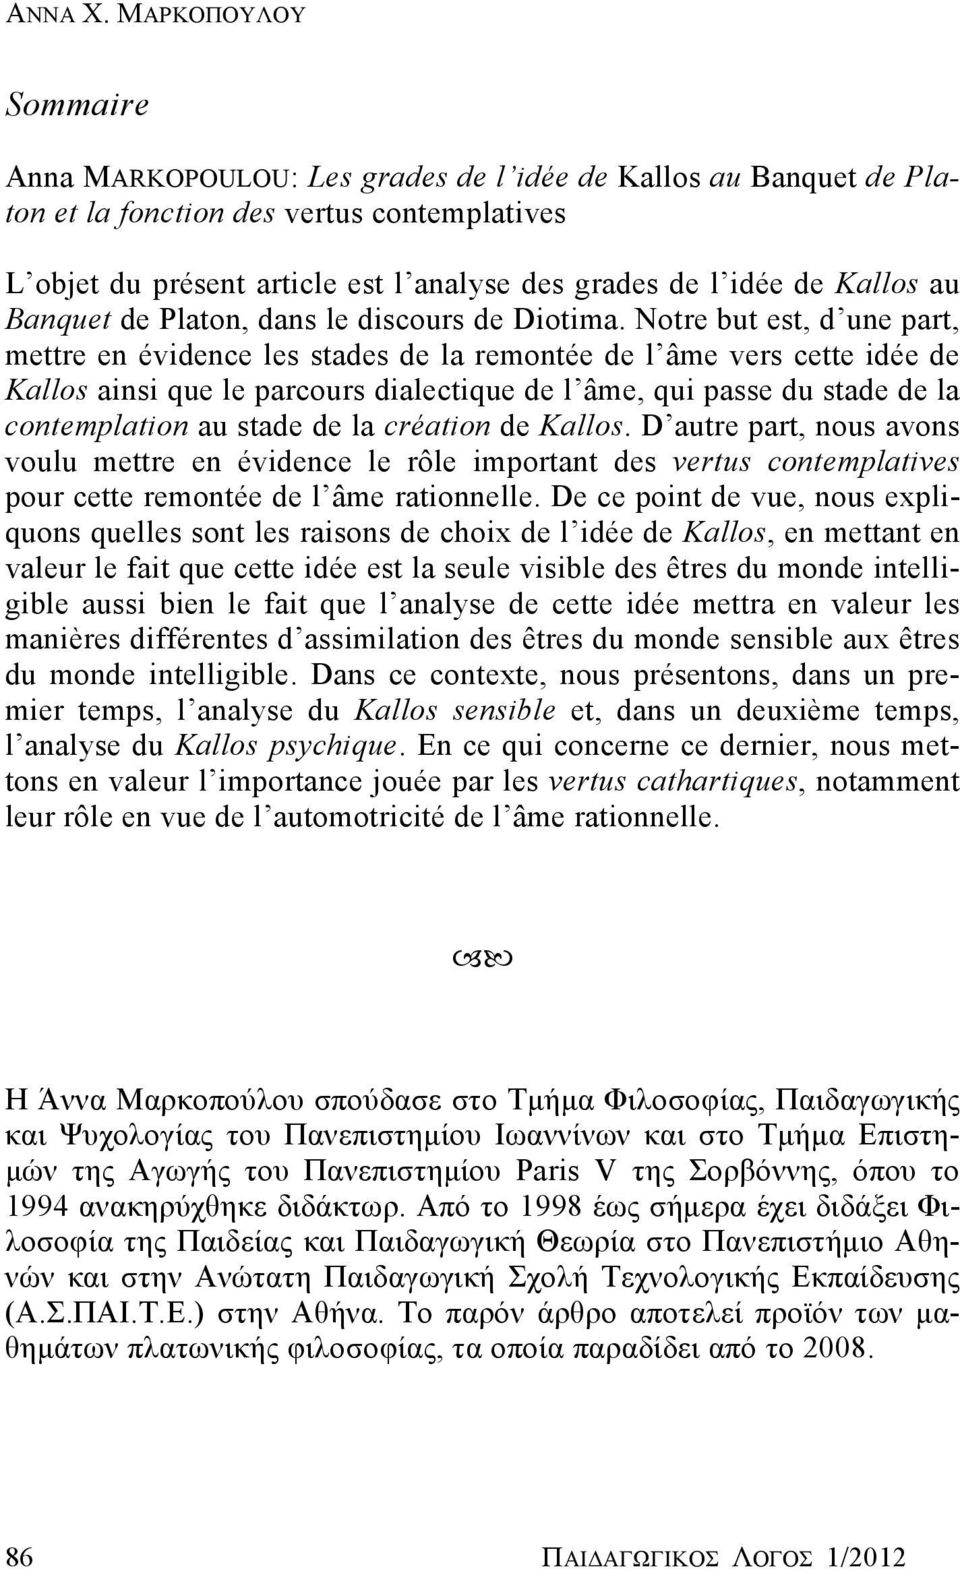 Kallos au Banquet de Platon, dans le discours de Diotima.